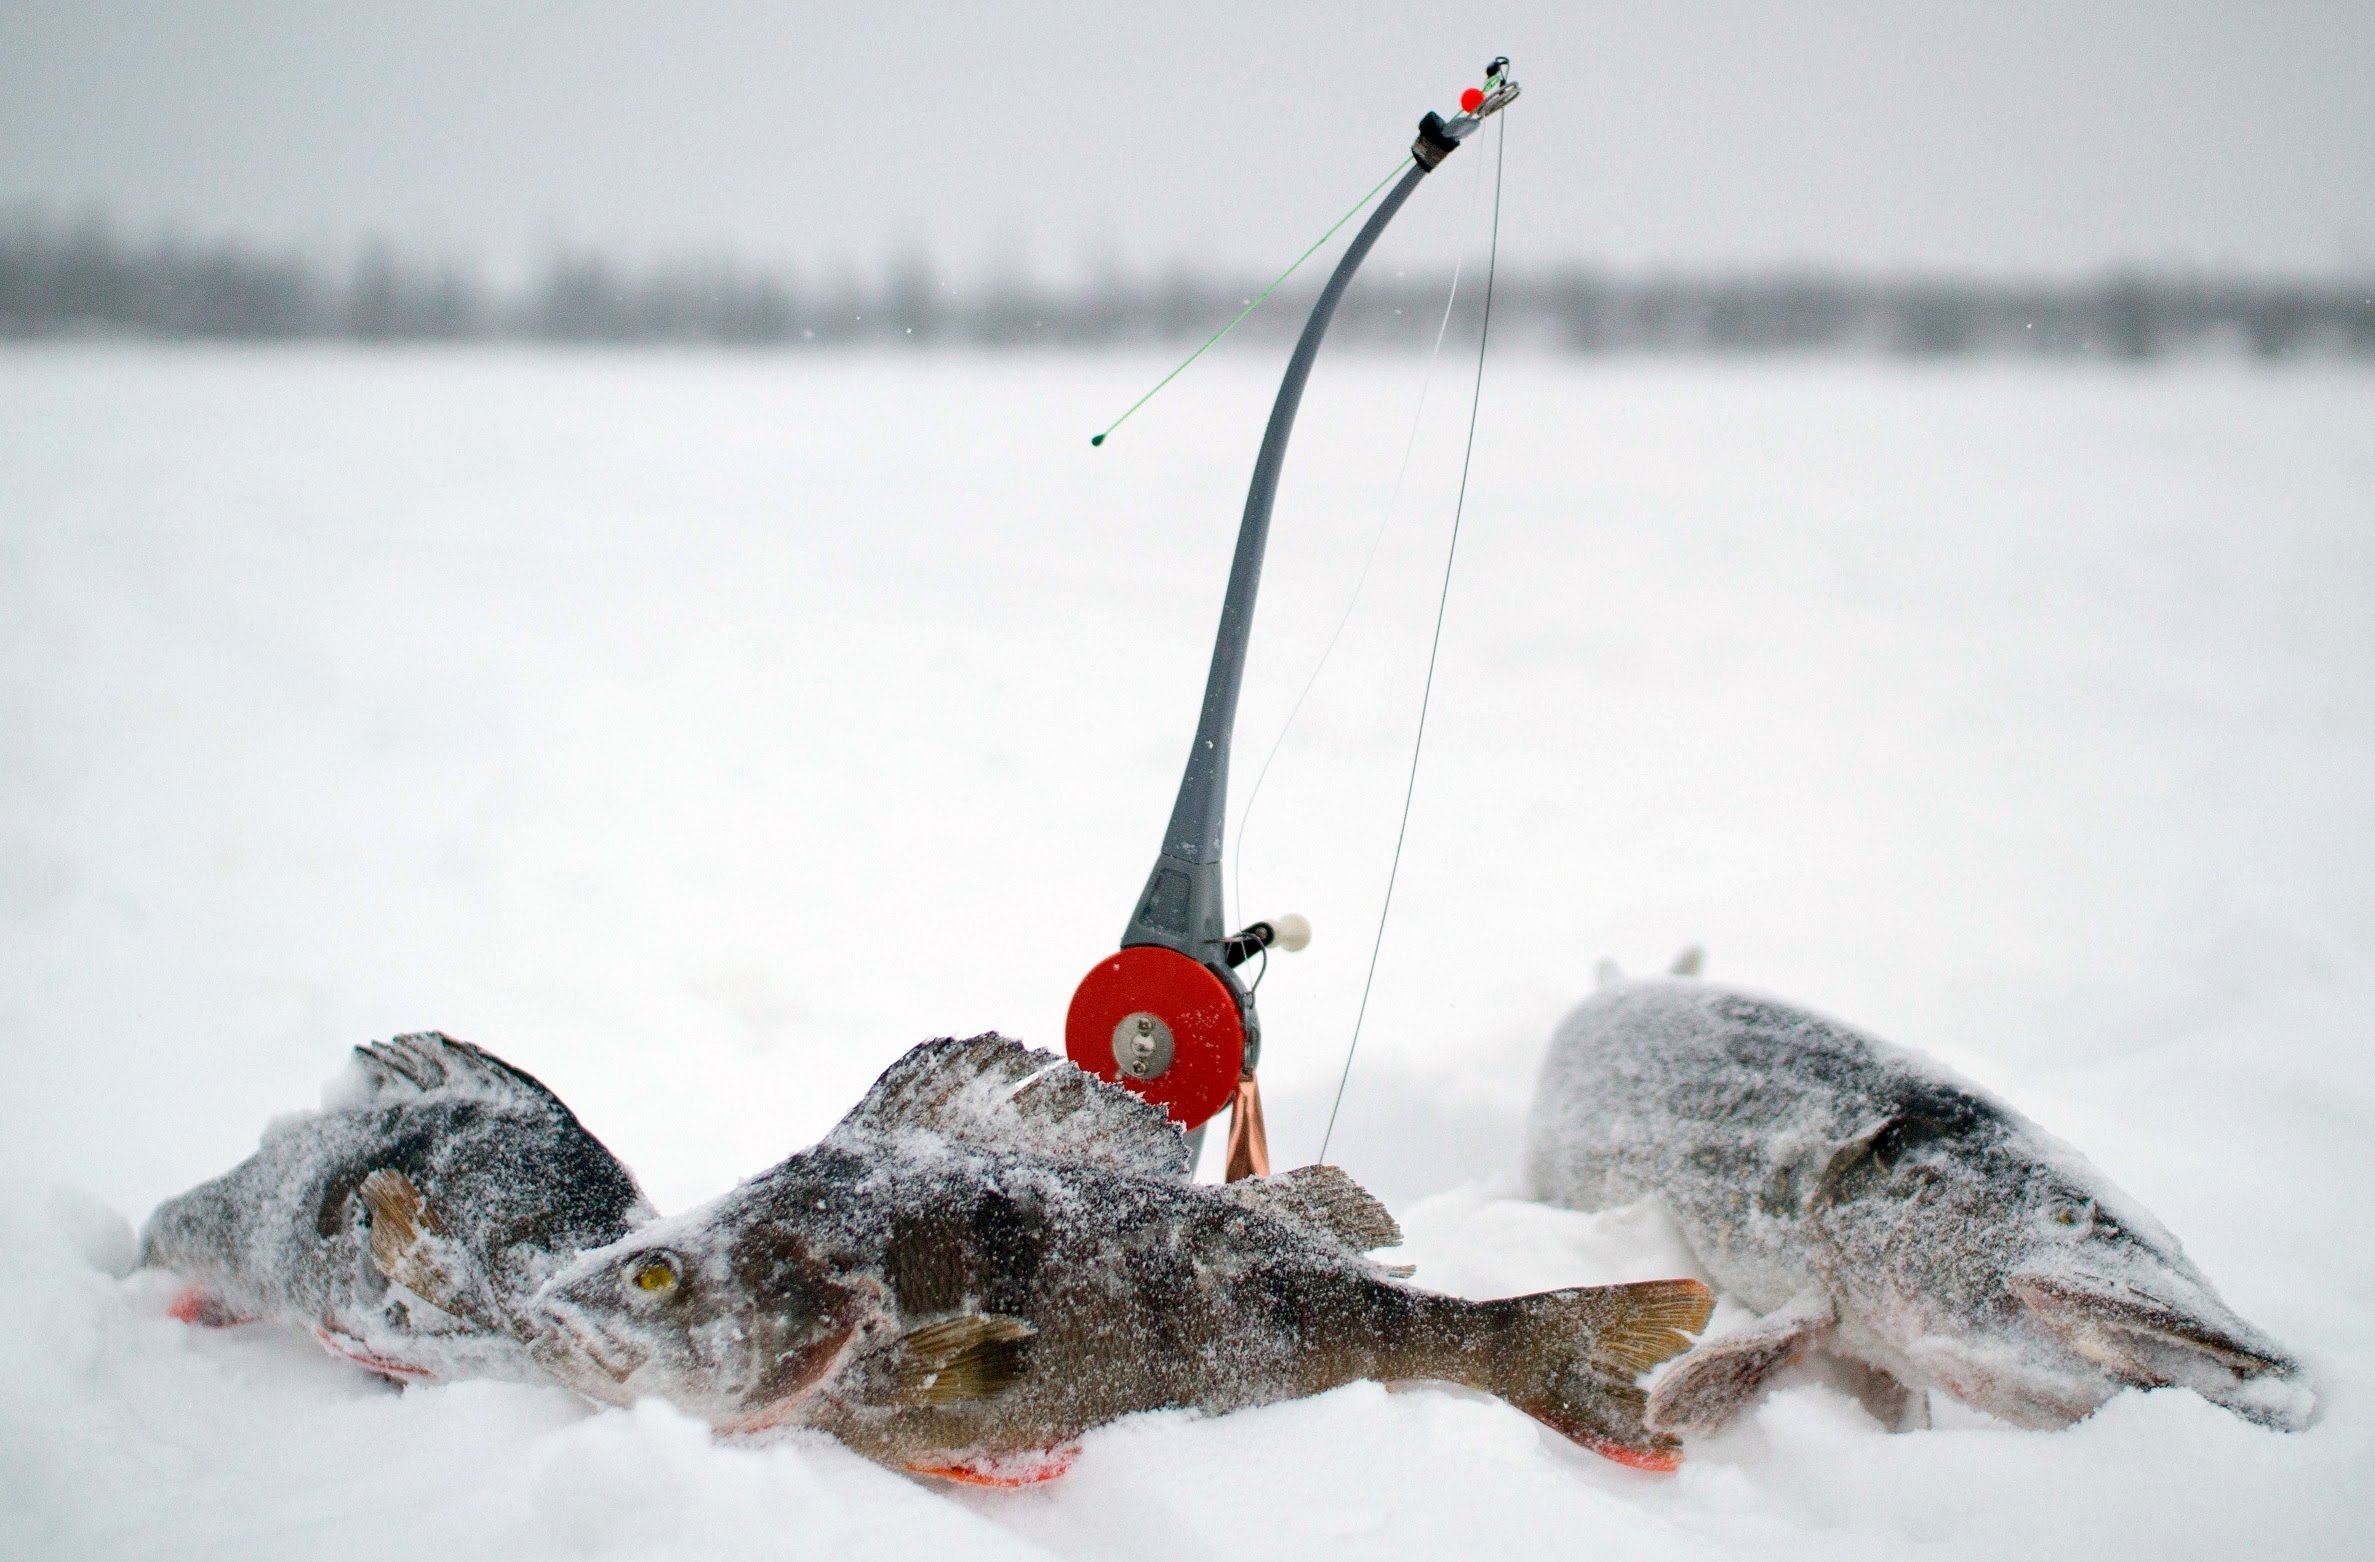 Видео ловли рыбы зимой. Зимняя рыбалка. Зимние снасти. Подледная рыбалка. Зимняя ловля рыбы.